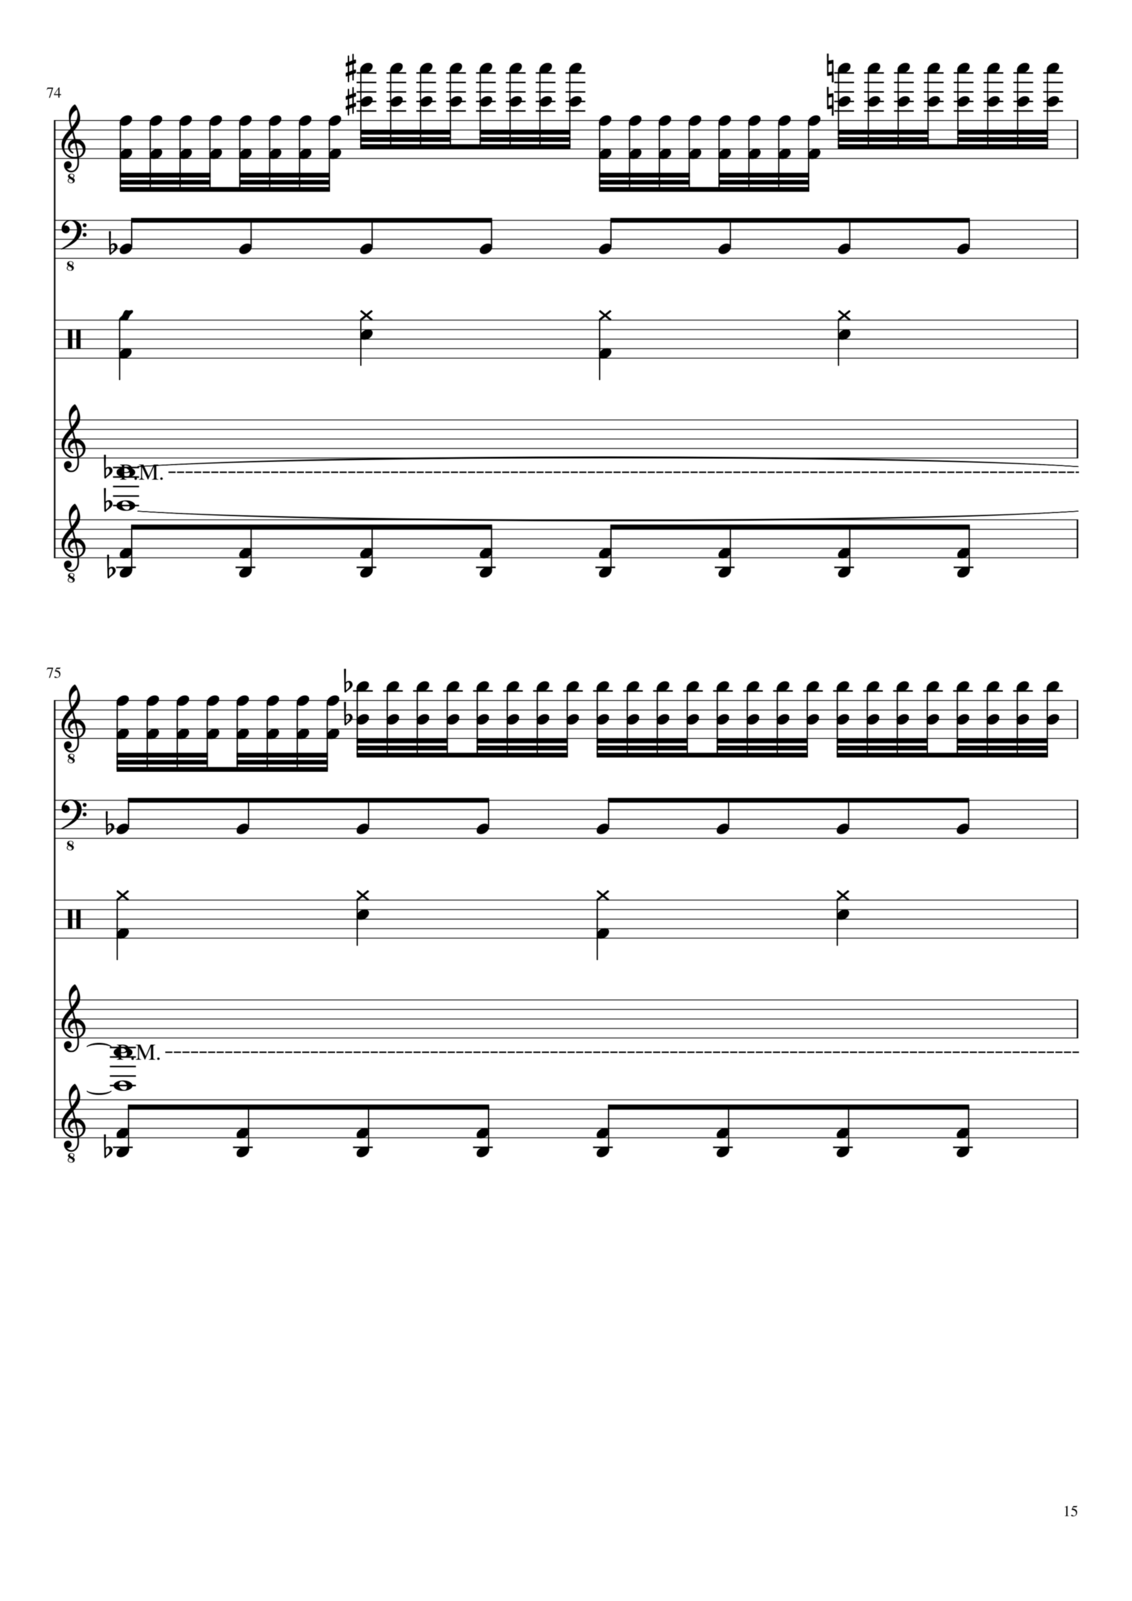 Vechnaya prizrachnaya vstrechnaya slide, Image 15